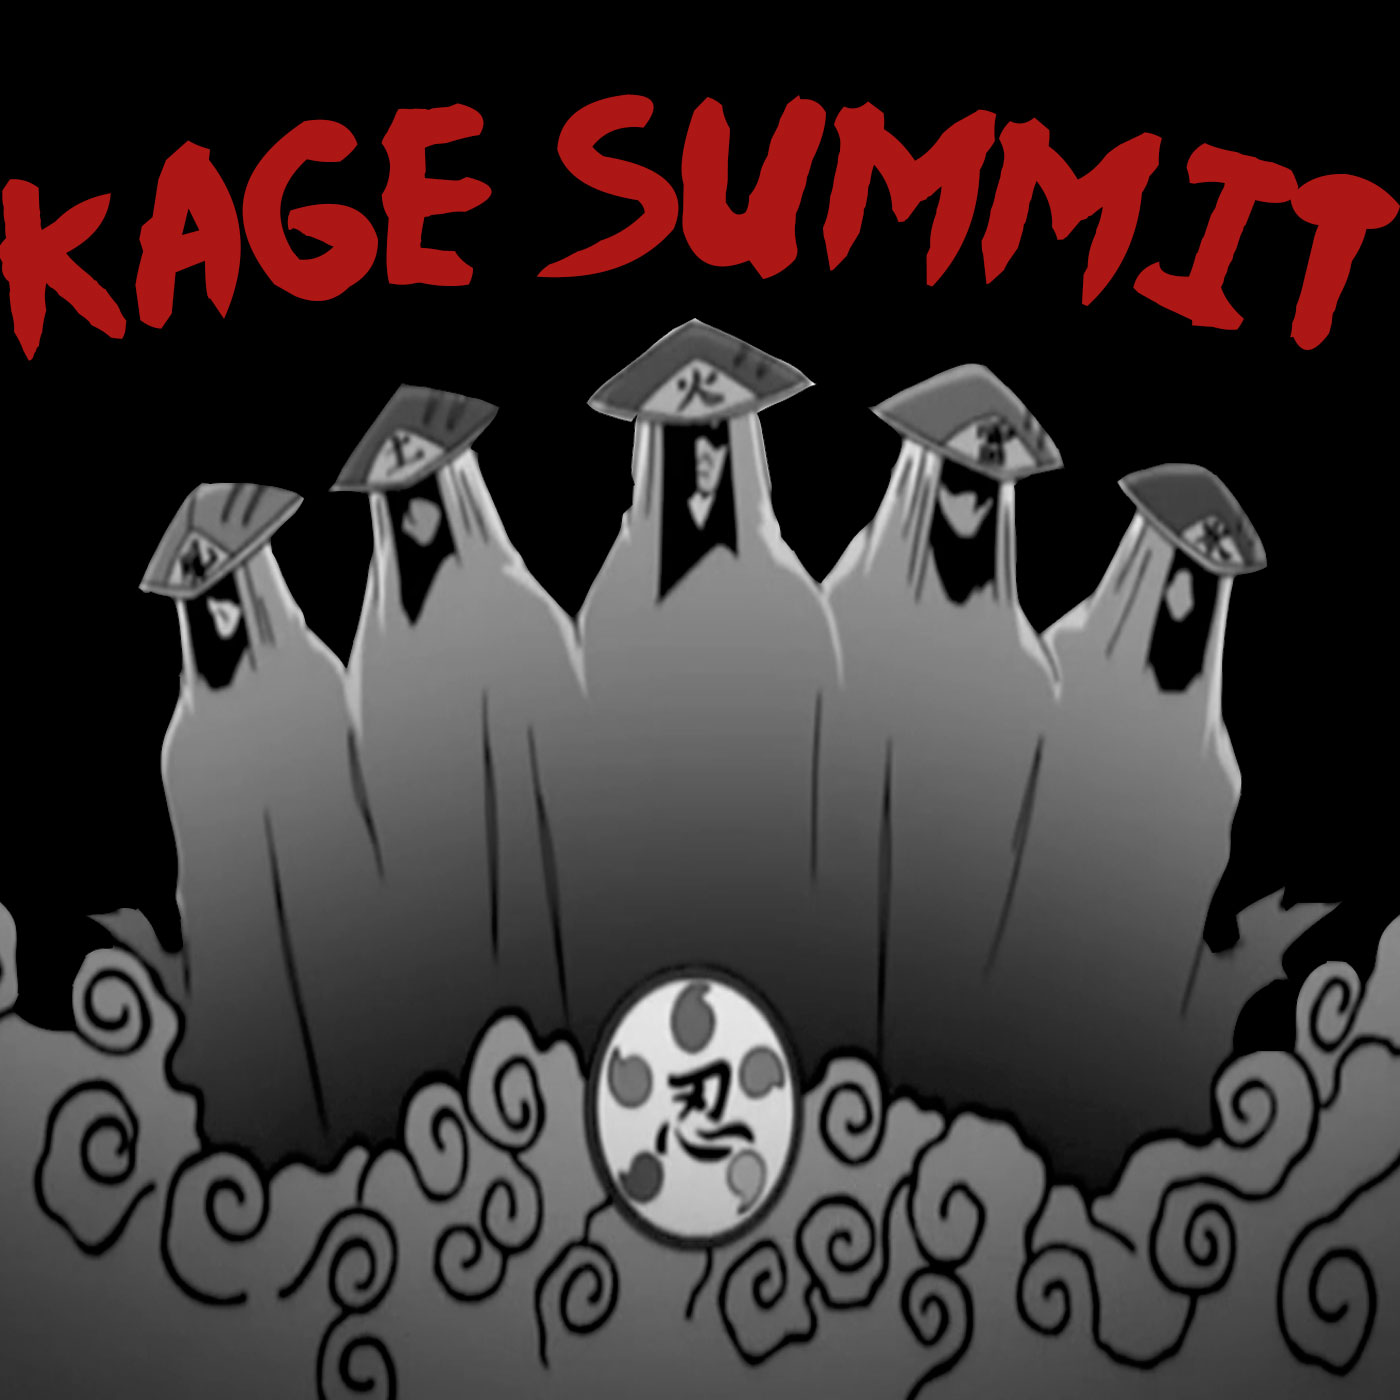 Kage Summit